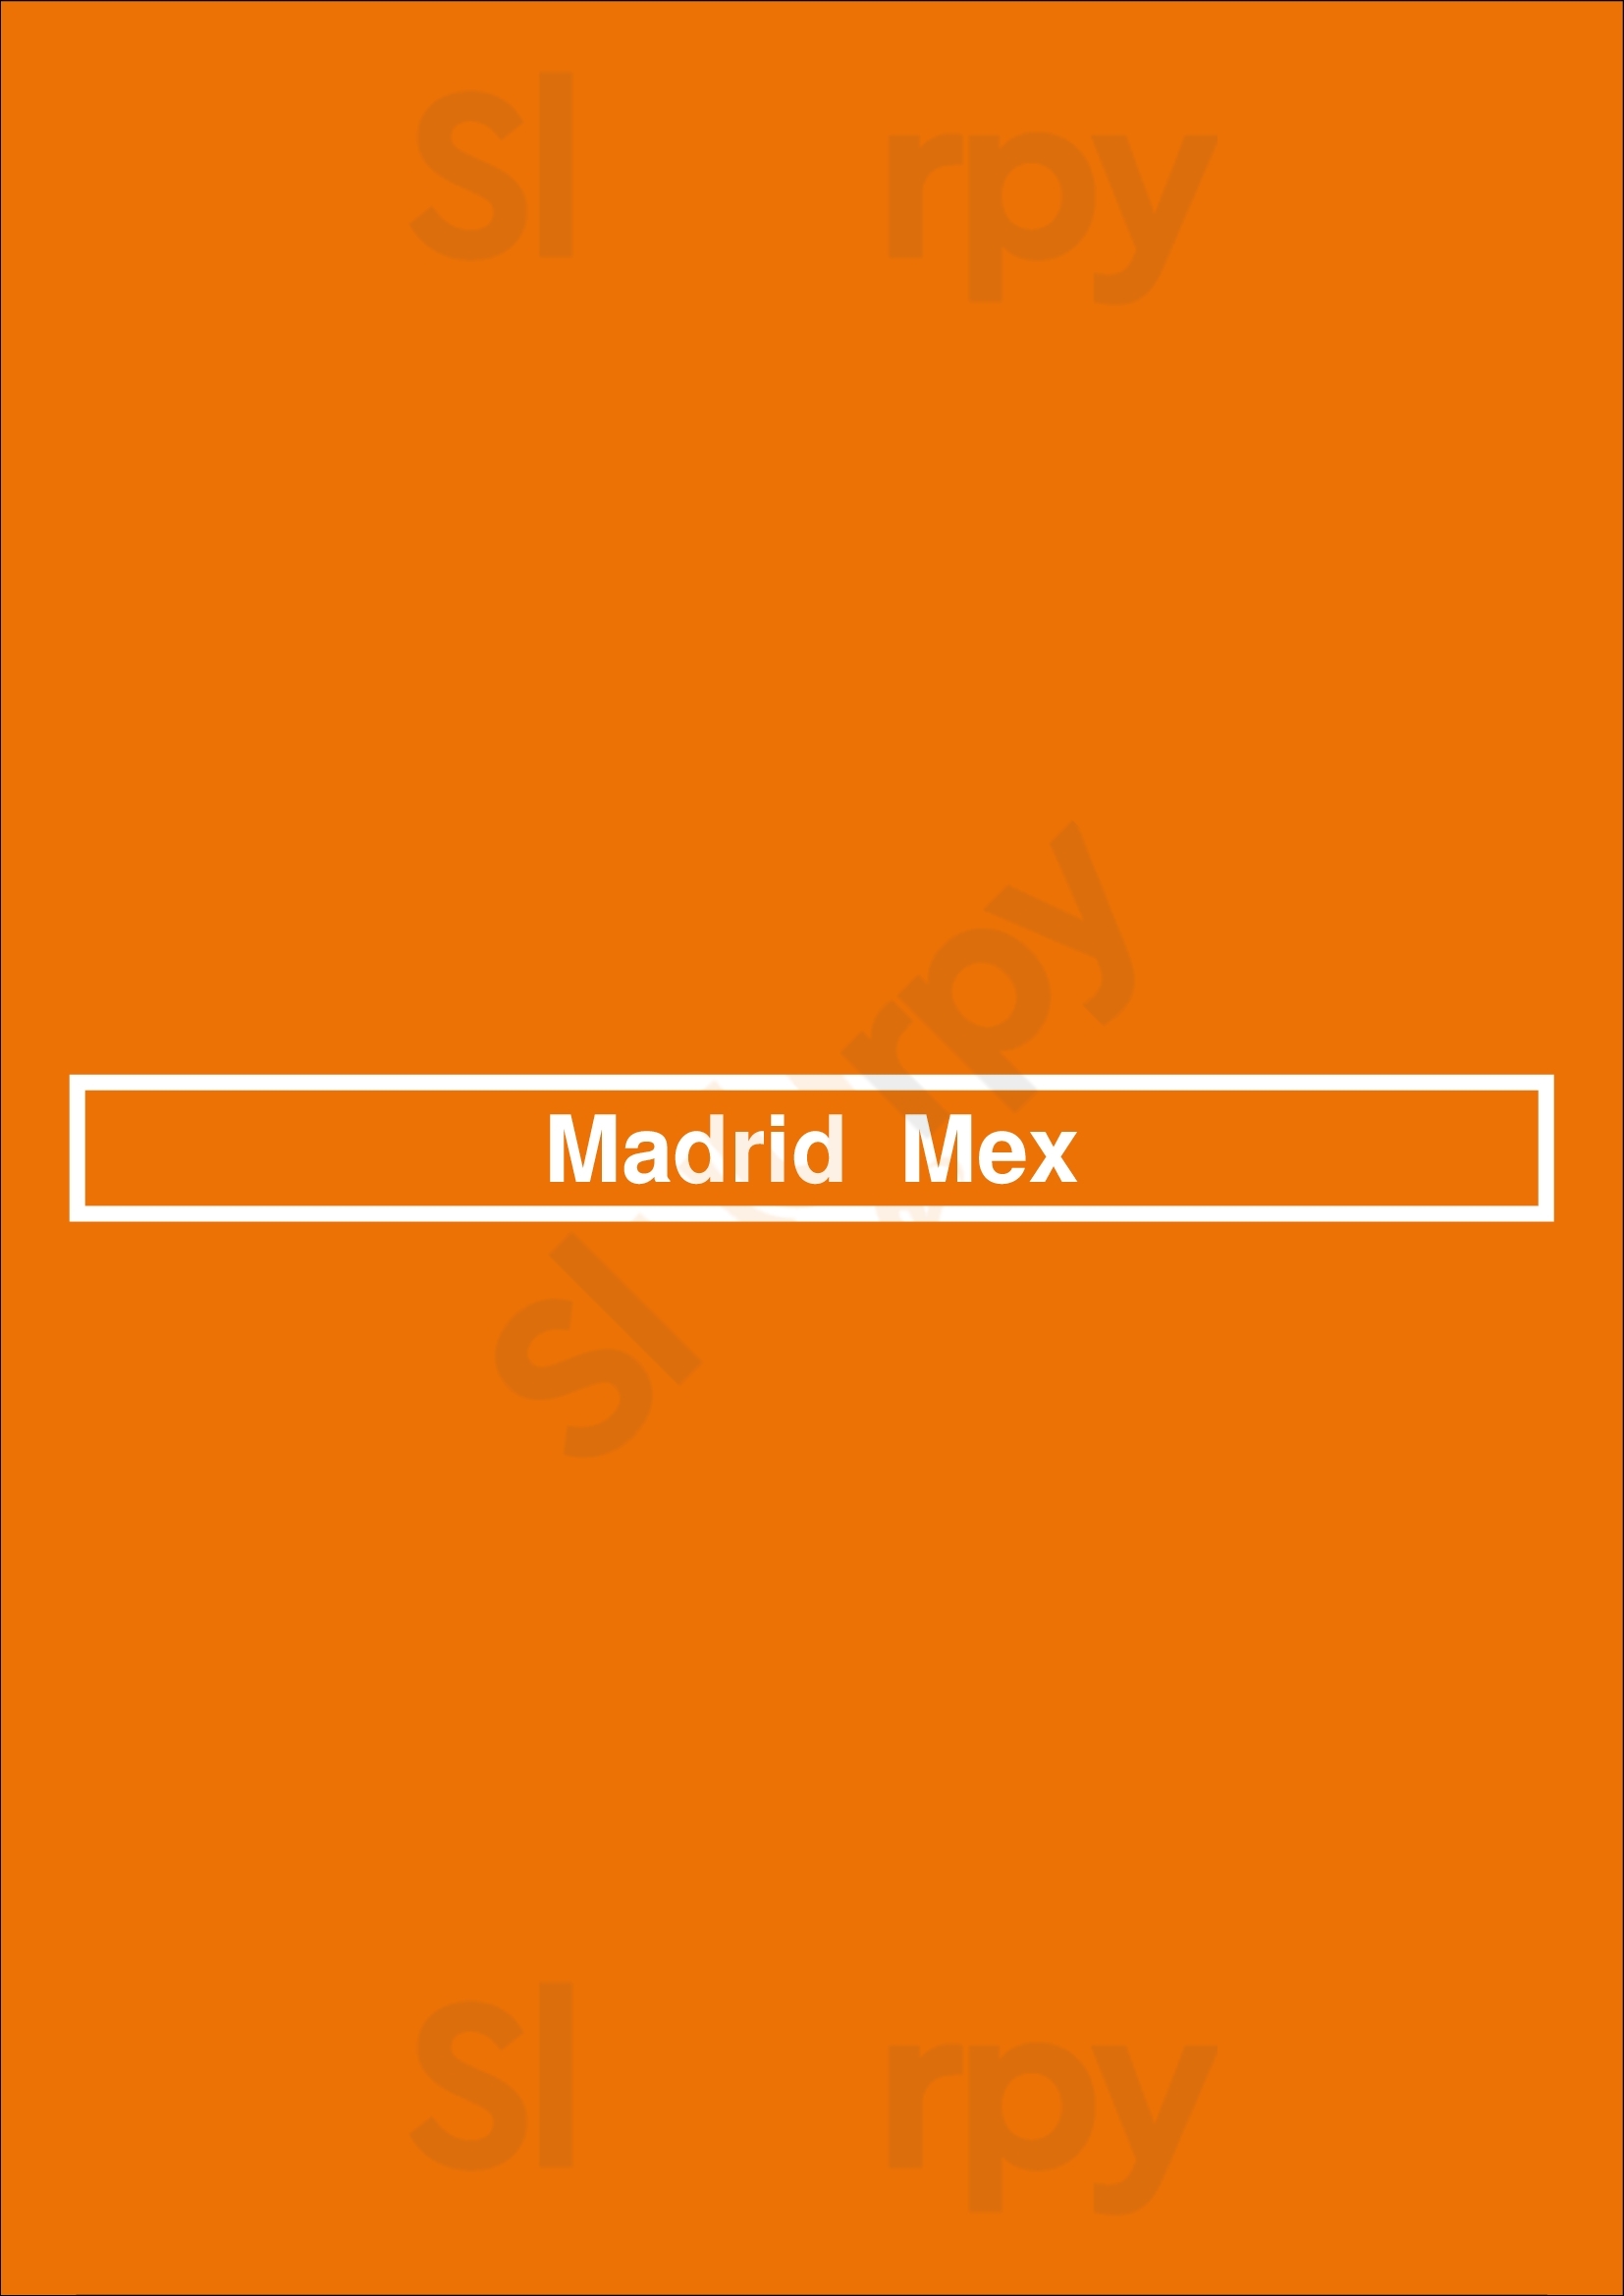 Madrid  Mex Madrid Menu - 1